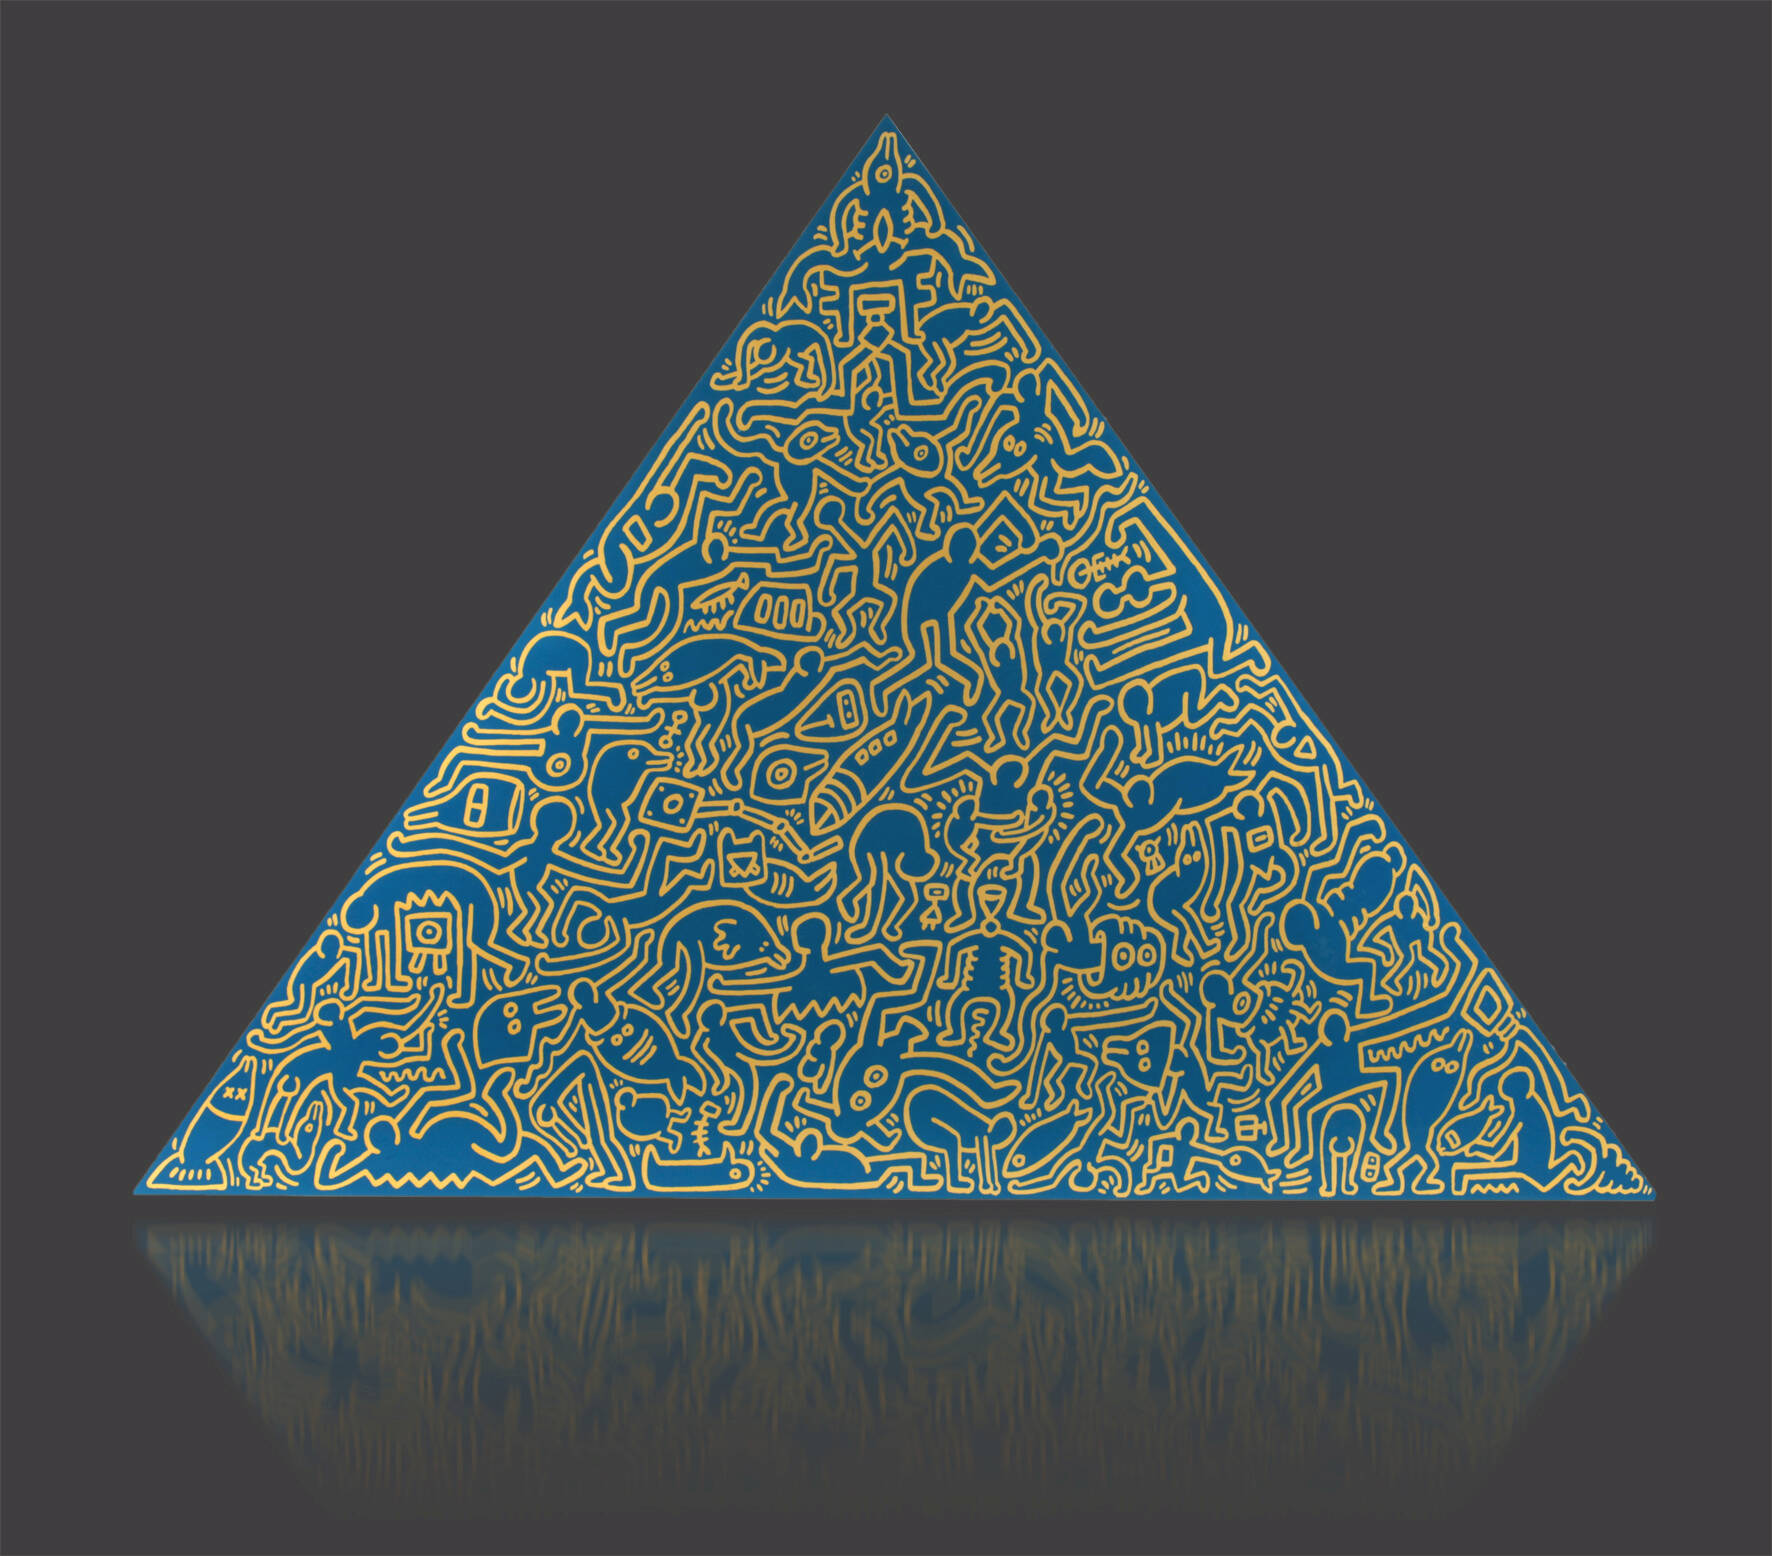 Keith Haring, “Pyramid”